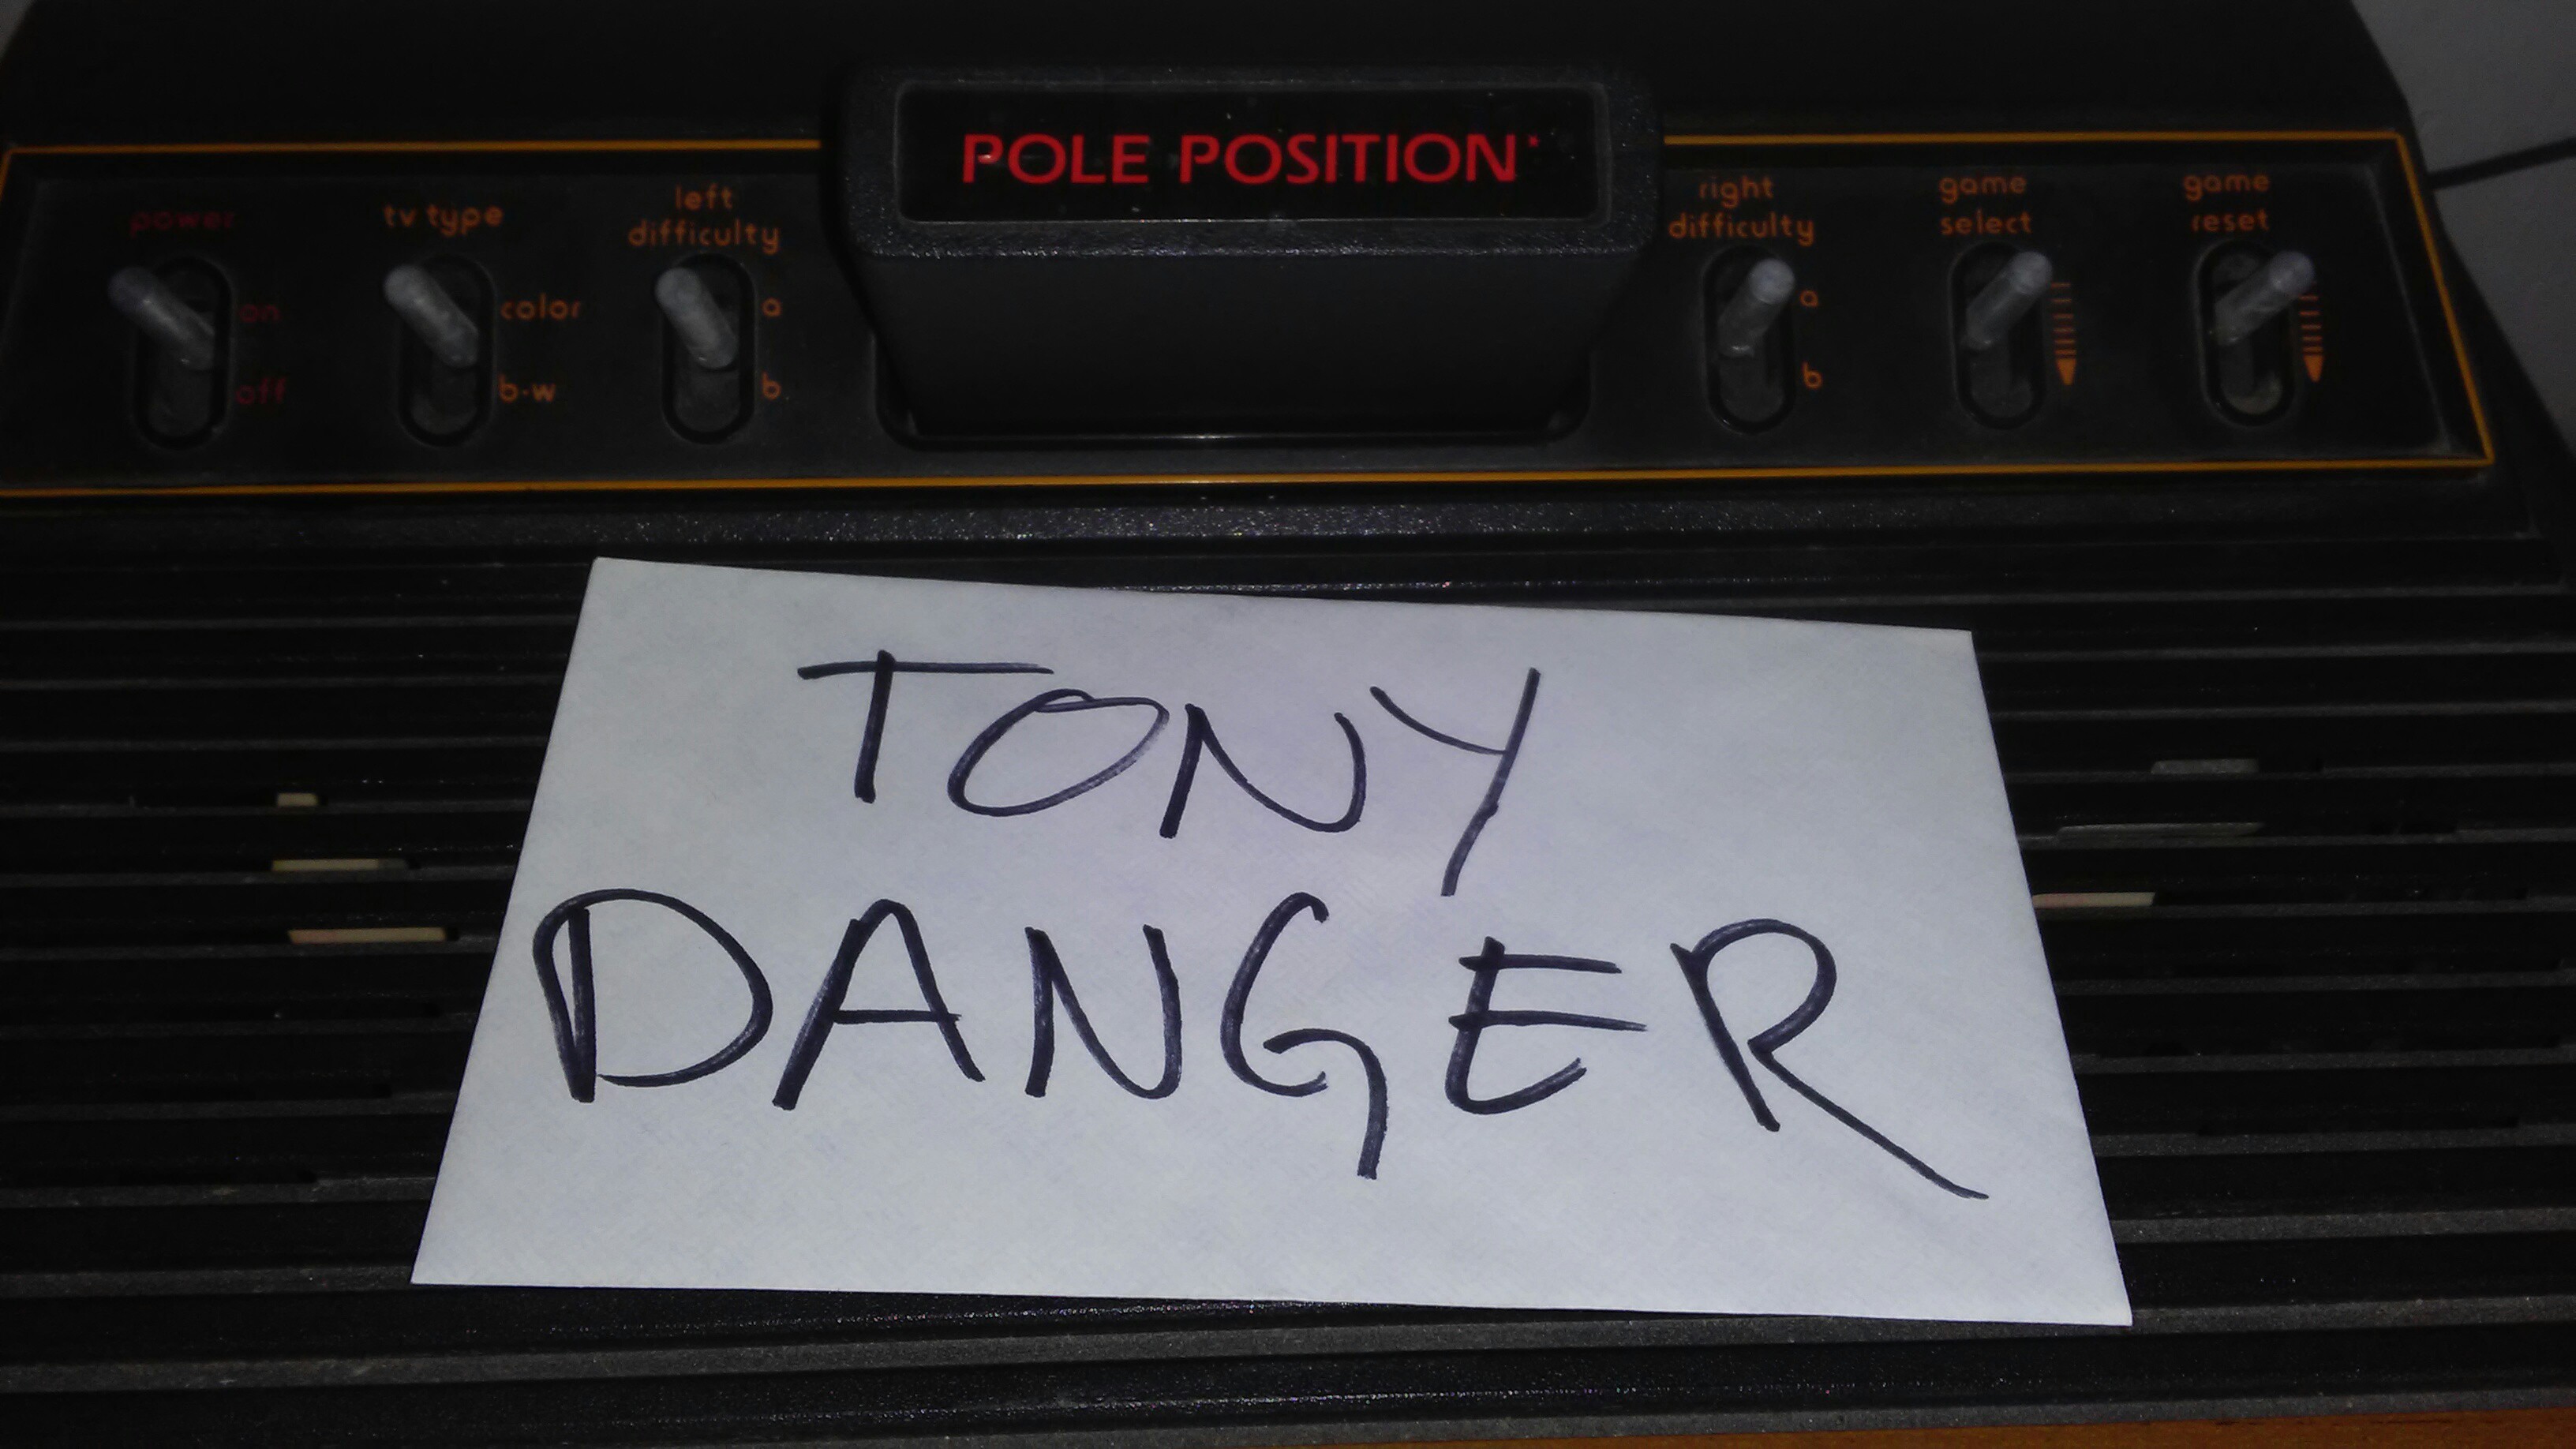 TonyDanger: Pole Position (Atari 2600) 59,610 points on 2017-01-04 17:16:34